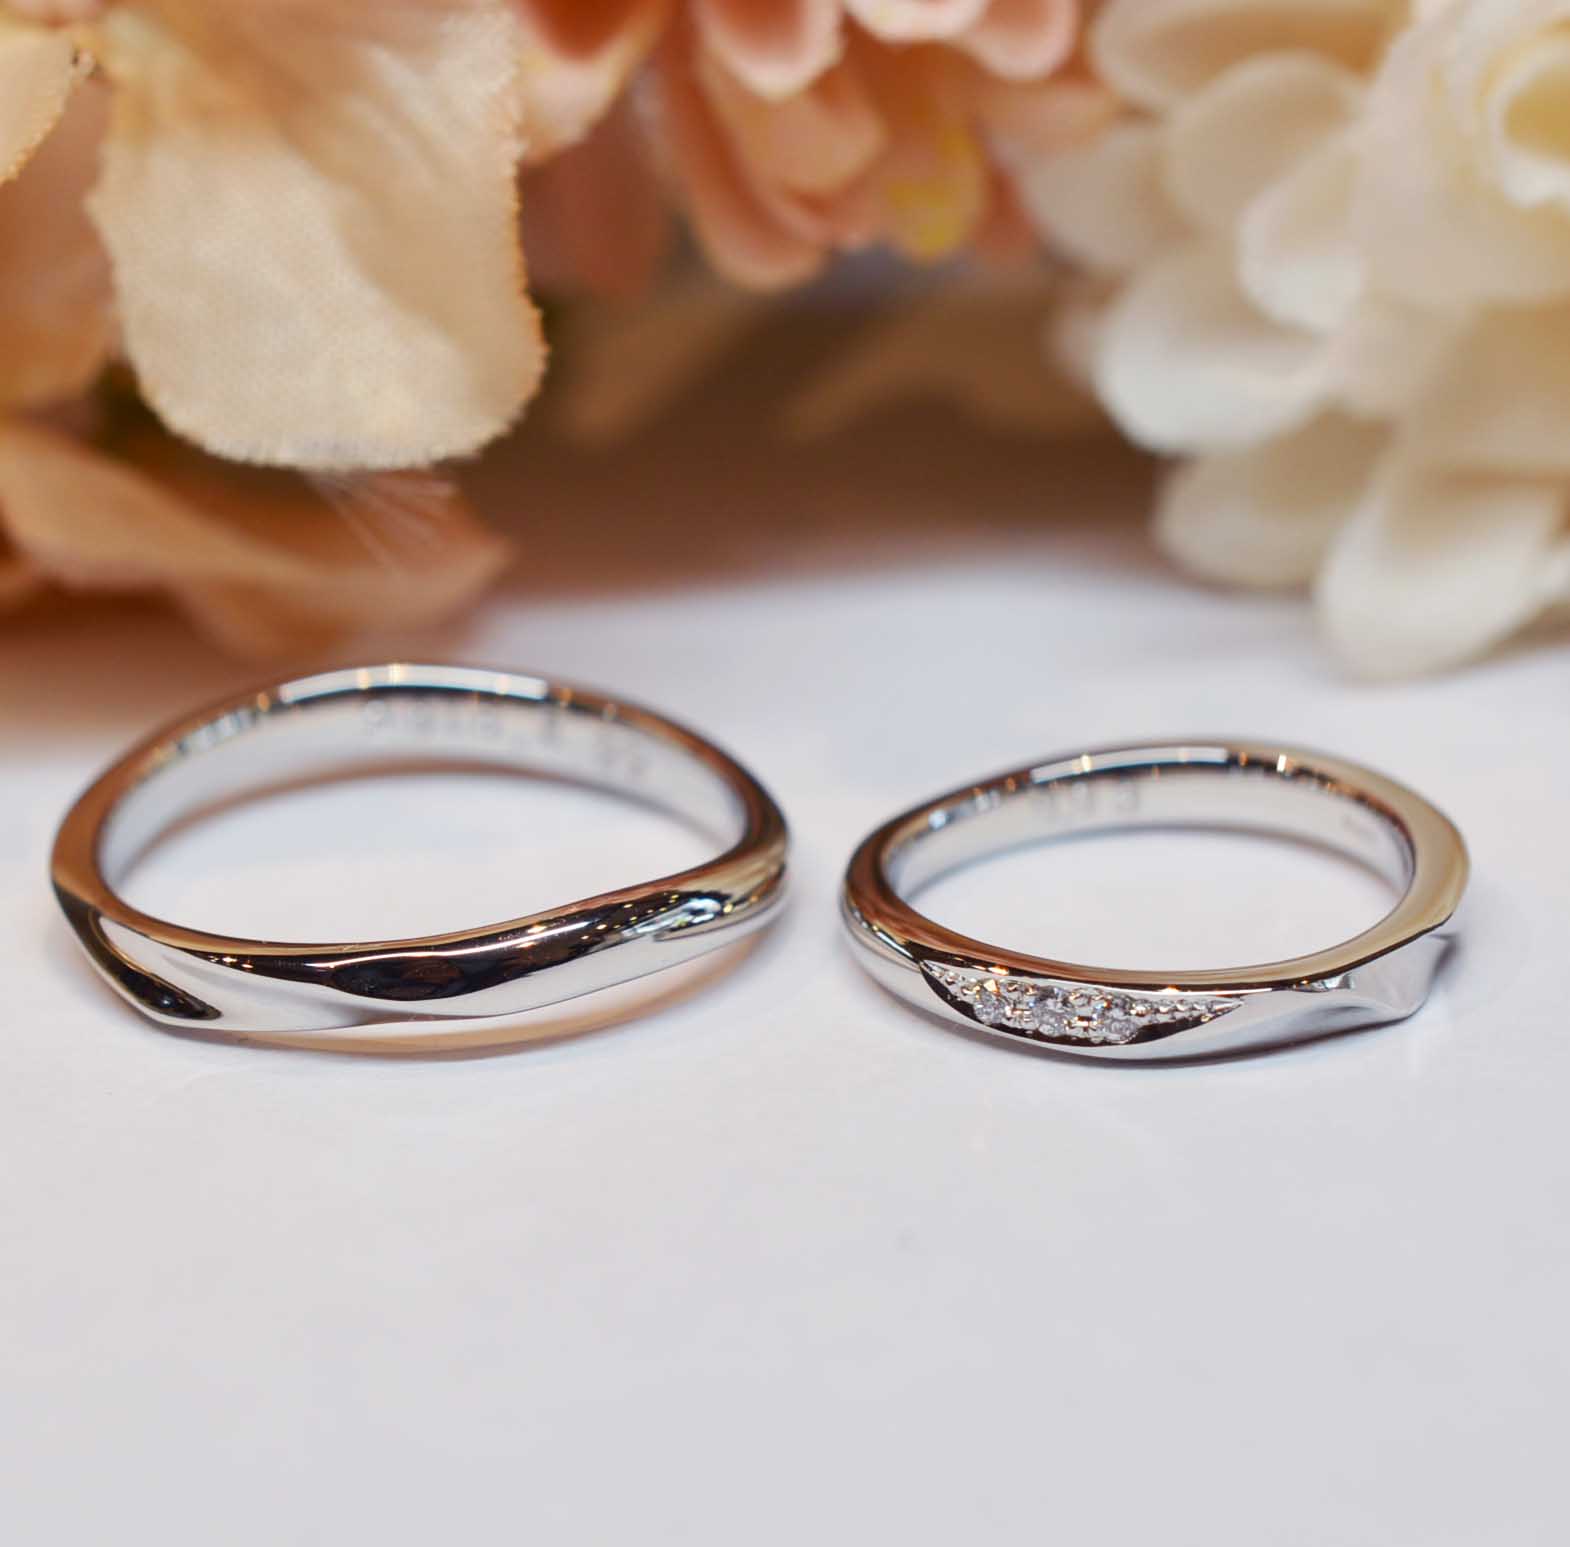 ダイヤモンドの組み合わせ方@手作り結婚指輪 工房スミス札幌店